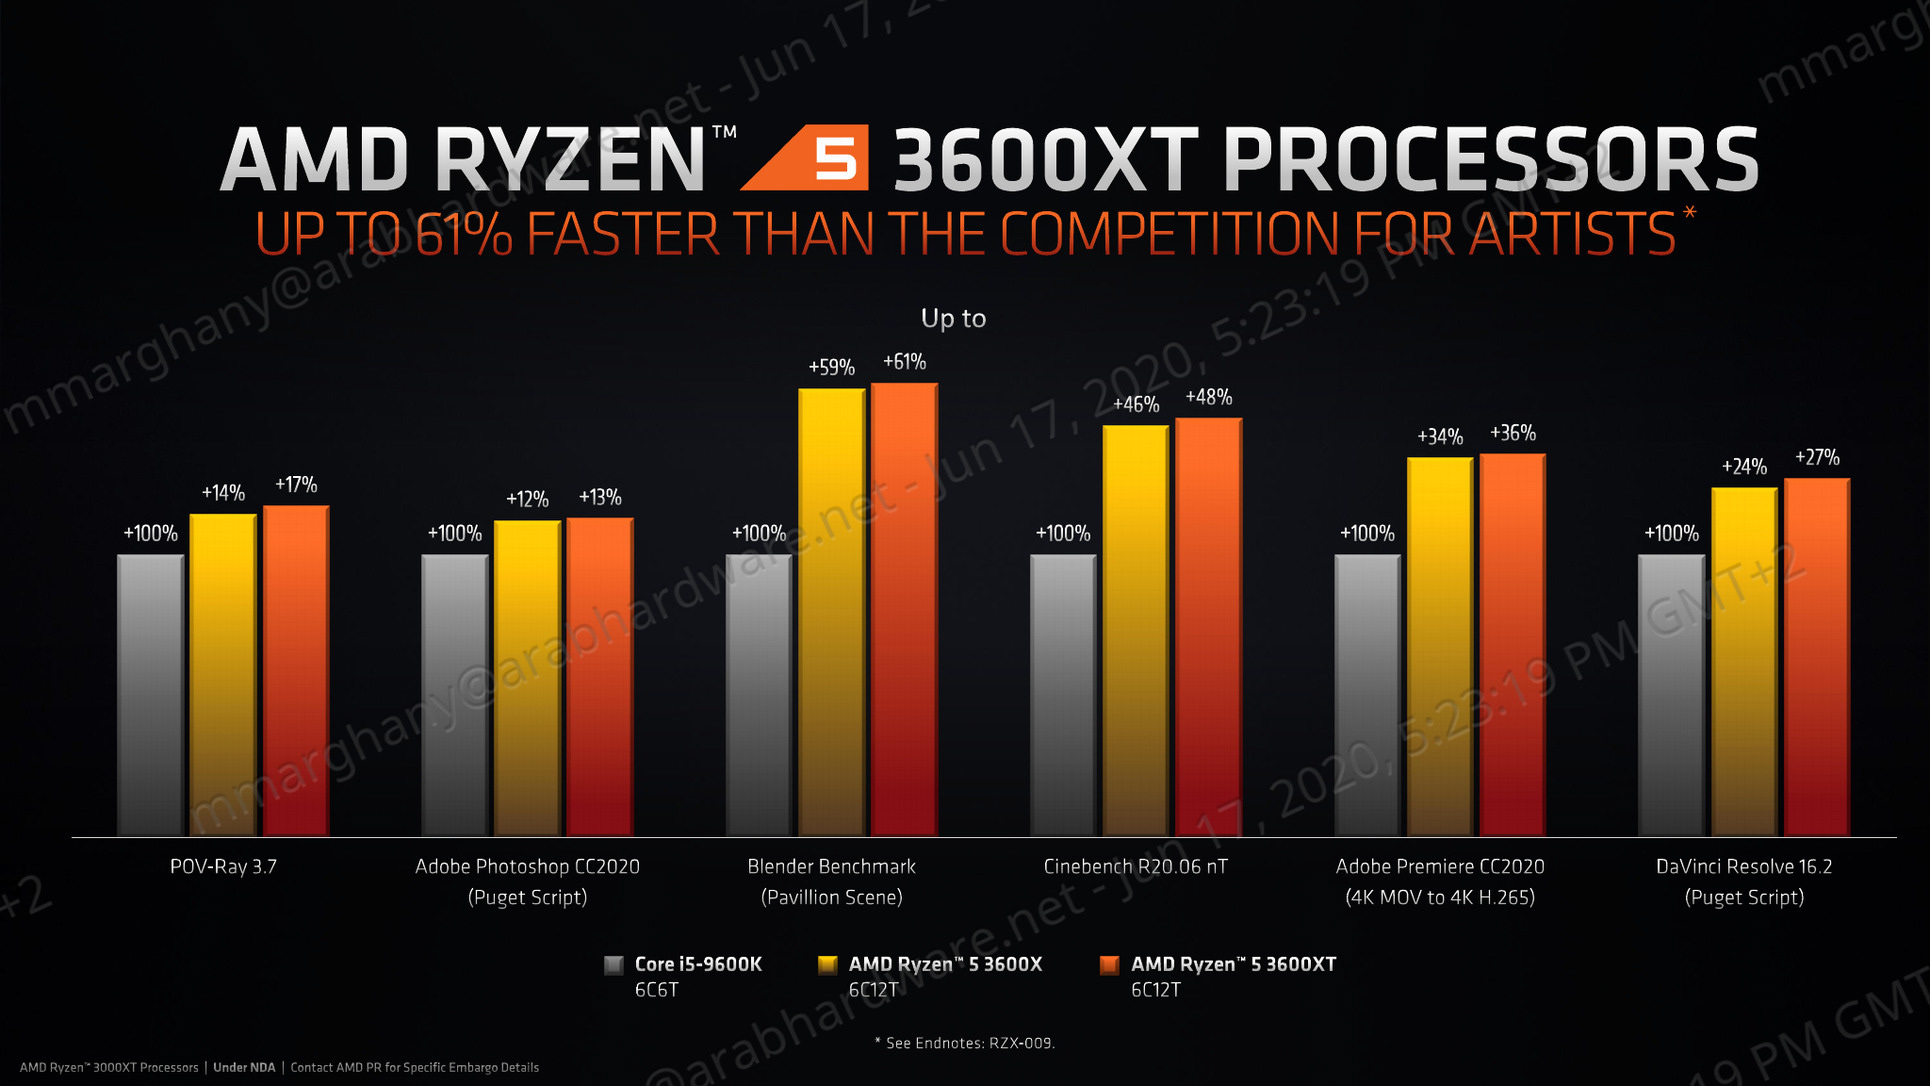 سلسلة معالجات AMD Ryzen 3000XT القوية أصبحت اليوم متوفرة بالأسواق!